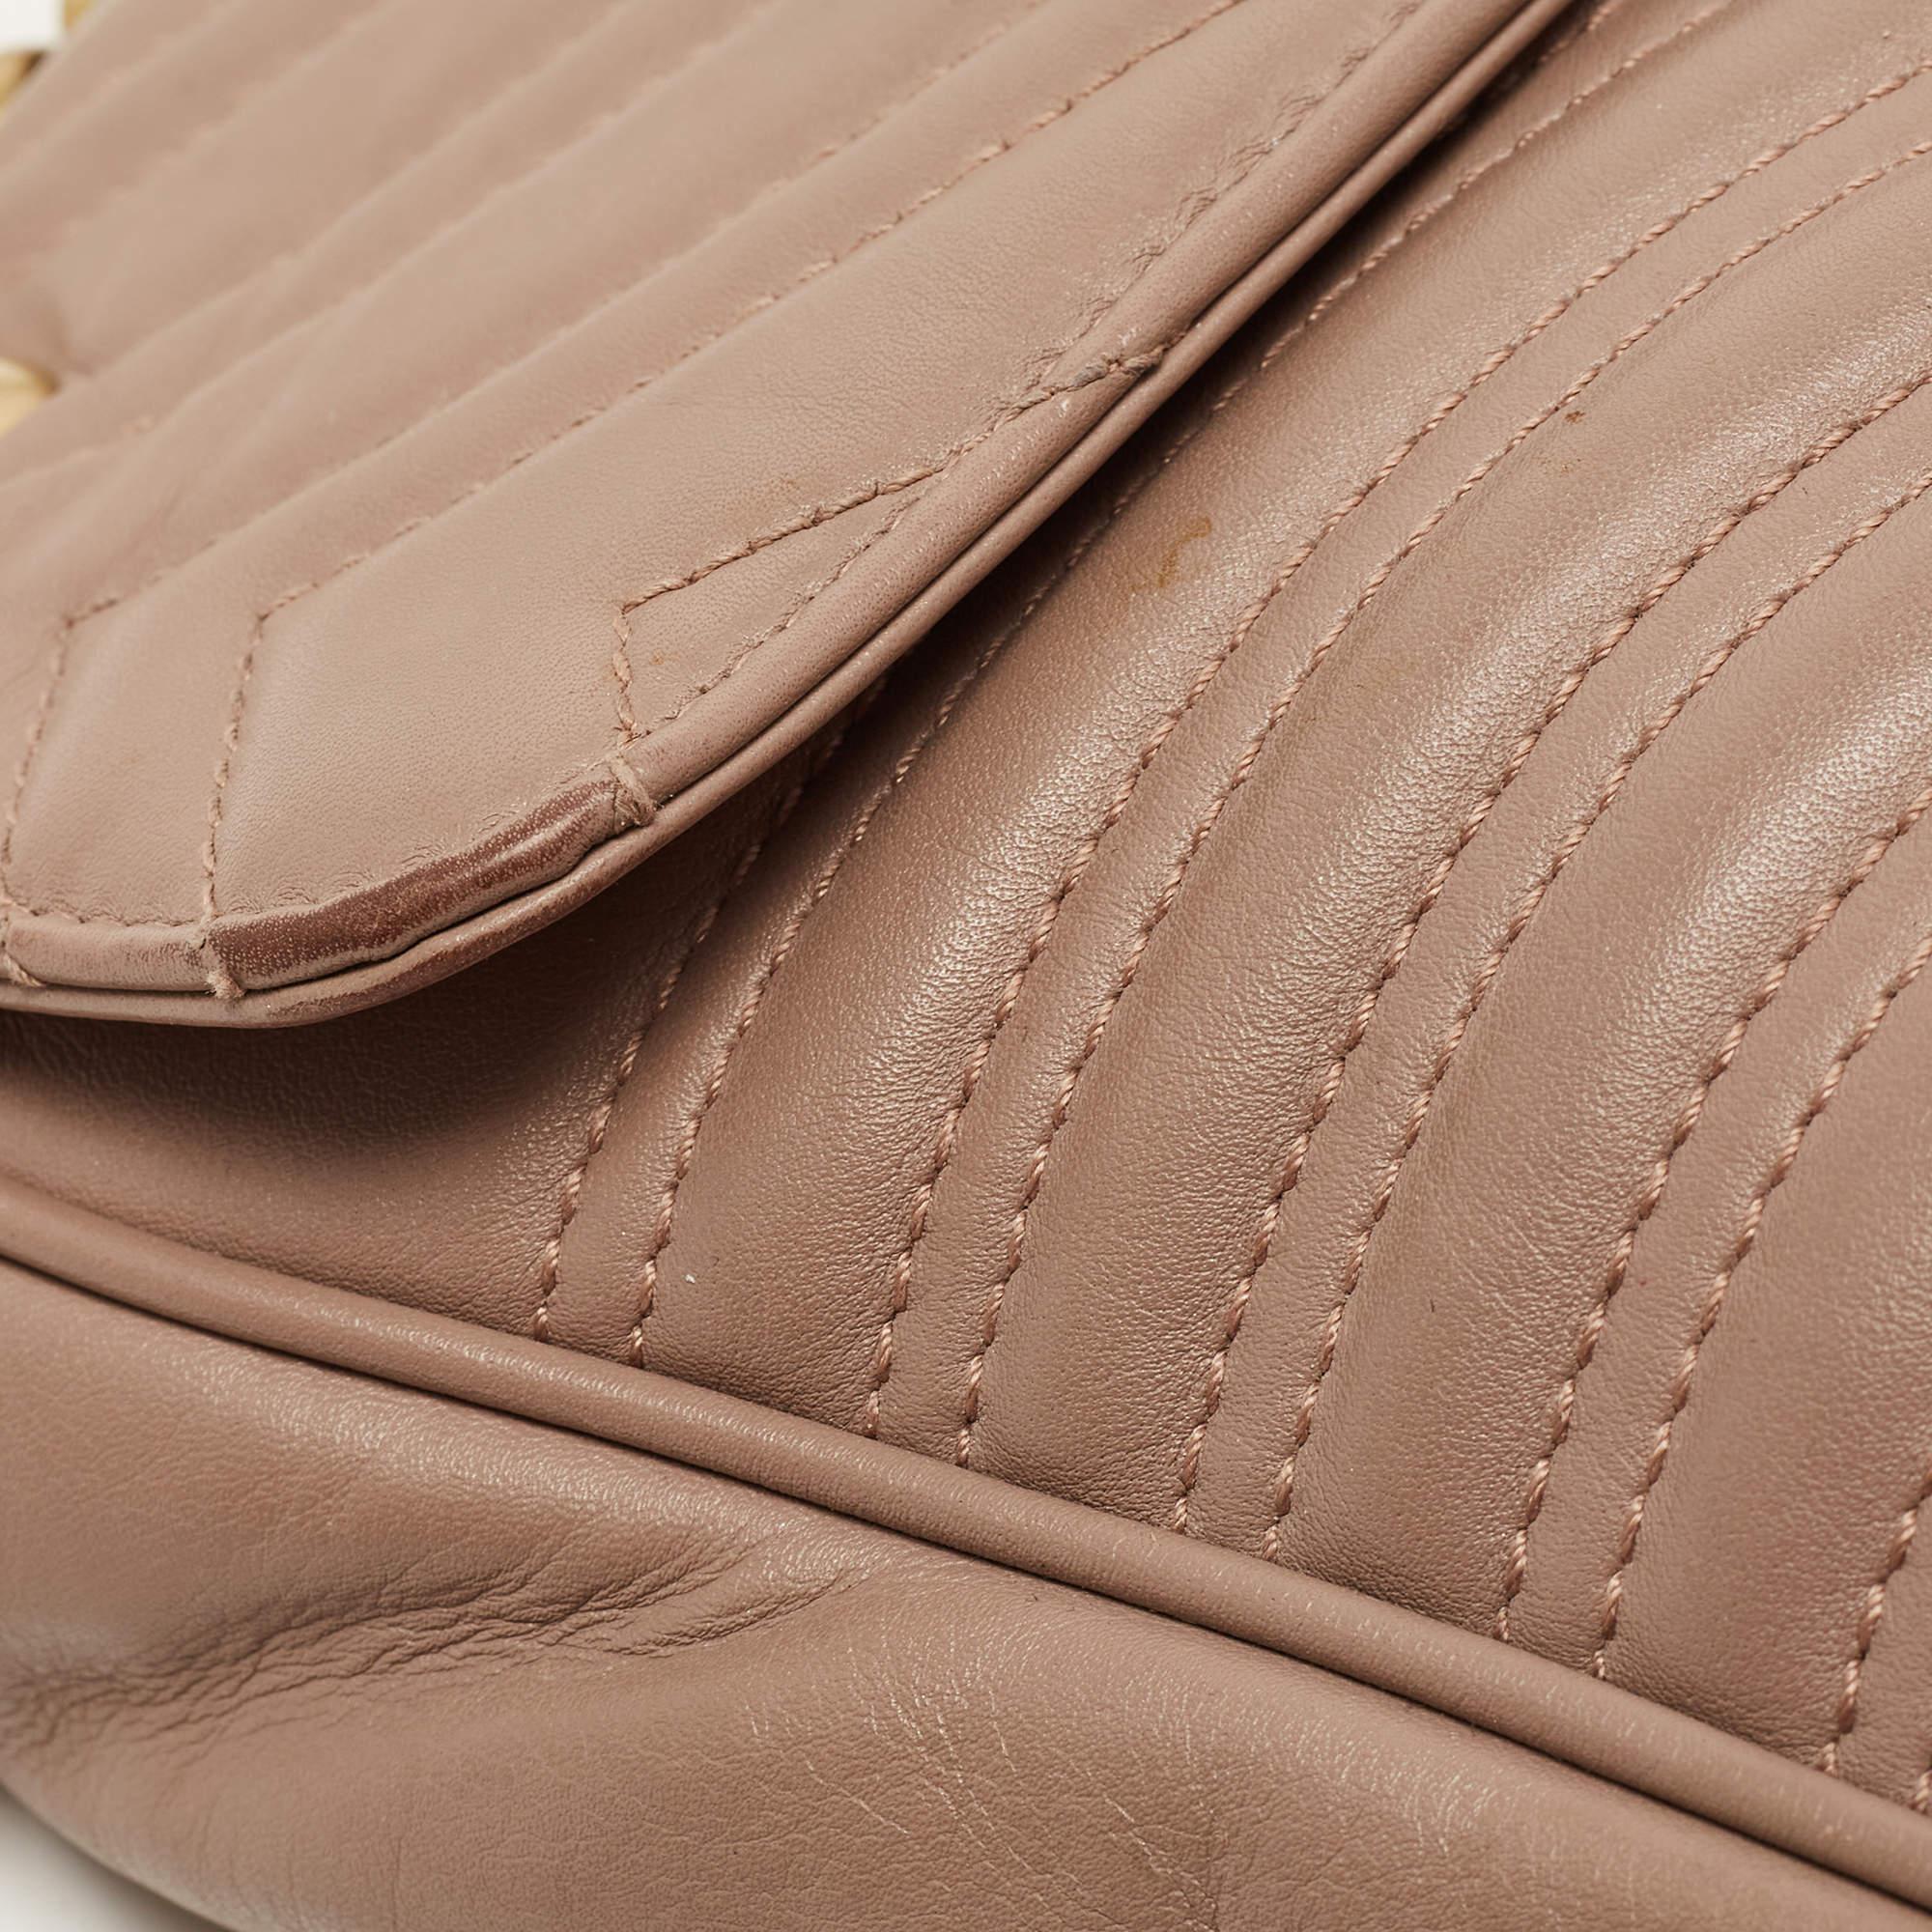 Gucci Beige Matelassé Leather Medium GG Marmont Shoulder Bag 5